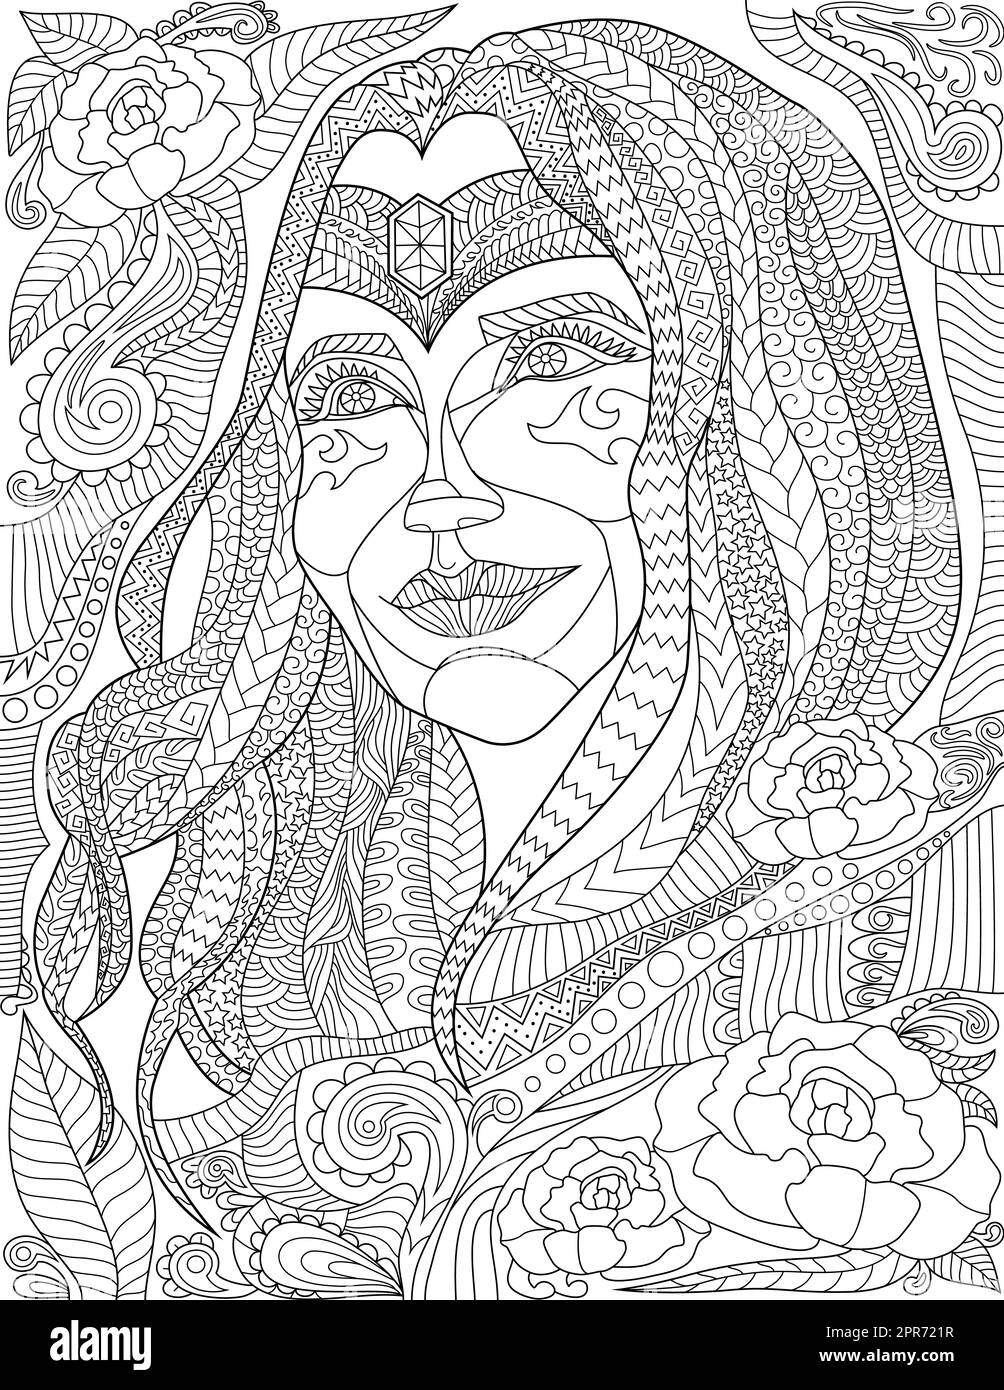 Coloriage page avec détail beau visage de femme avec des bijoux sur le front. Feuille à colorer avec jolie fille souriante avec différentes fleurs en arrière-plan. Banque D'Images